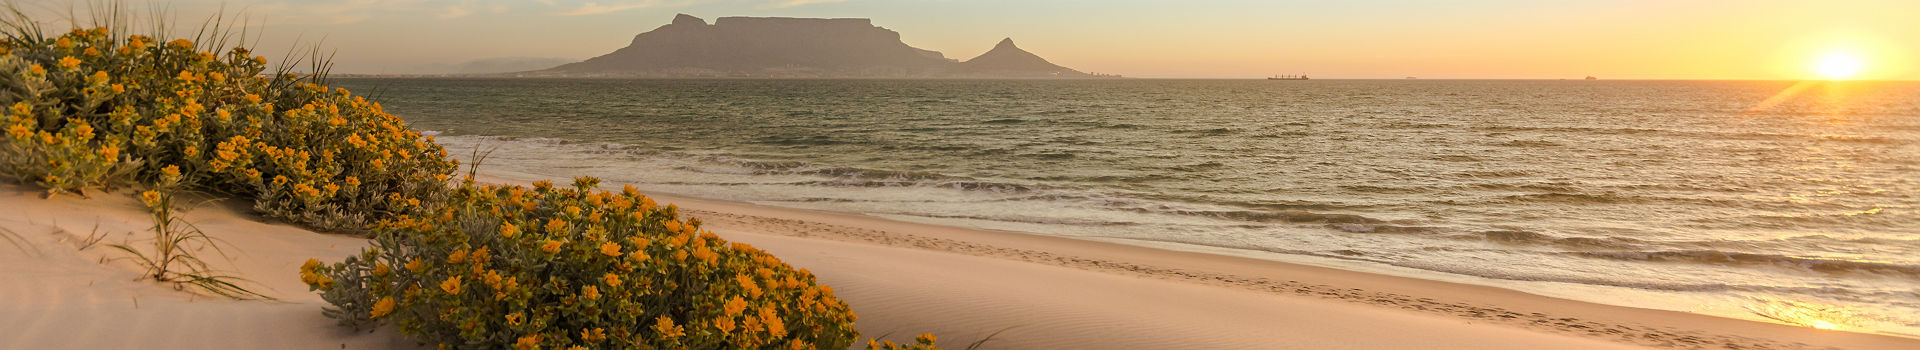 Afrique du Sud - Vue sur la plage, Cape Town